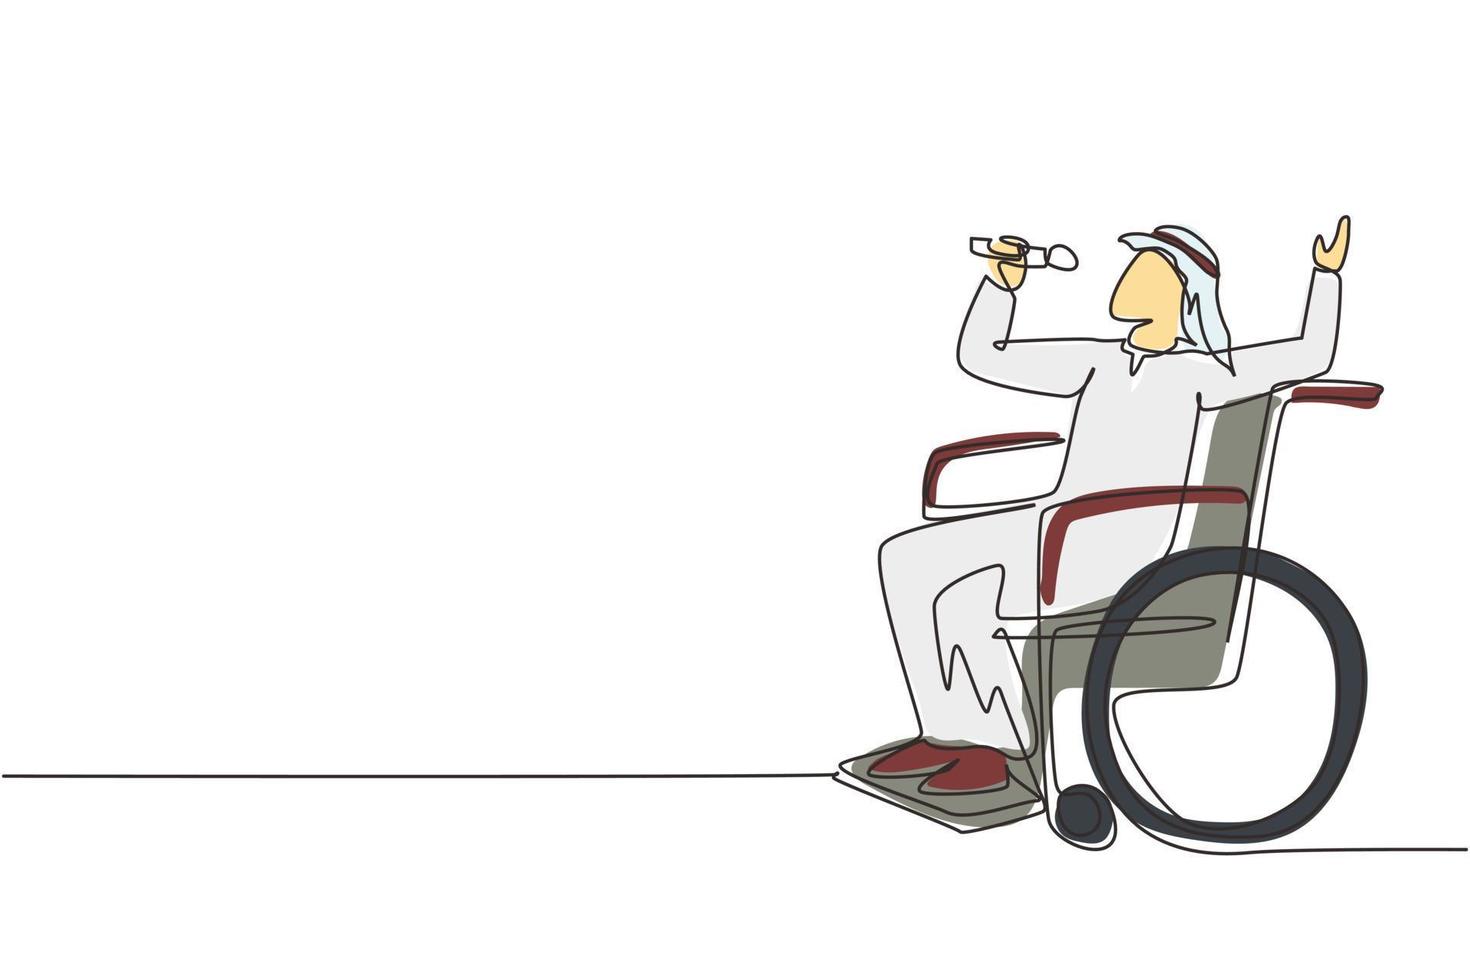 enda kontinuerlig linjeteckning funktionshindrad person som njuter av livet. arabisk man sitter i rullstol sjunger på karaoke. spendera tid på rekreationsställen. en rad rita grafisk design vektorillustration vektor